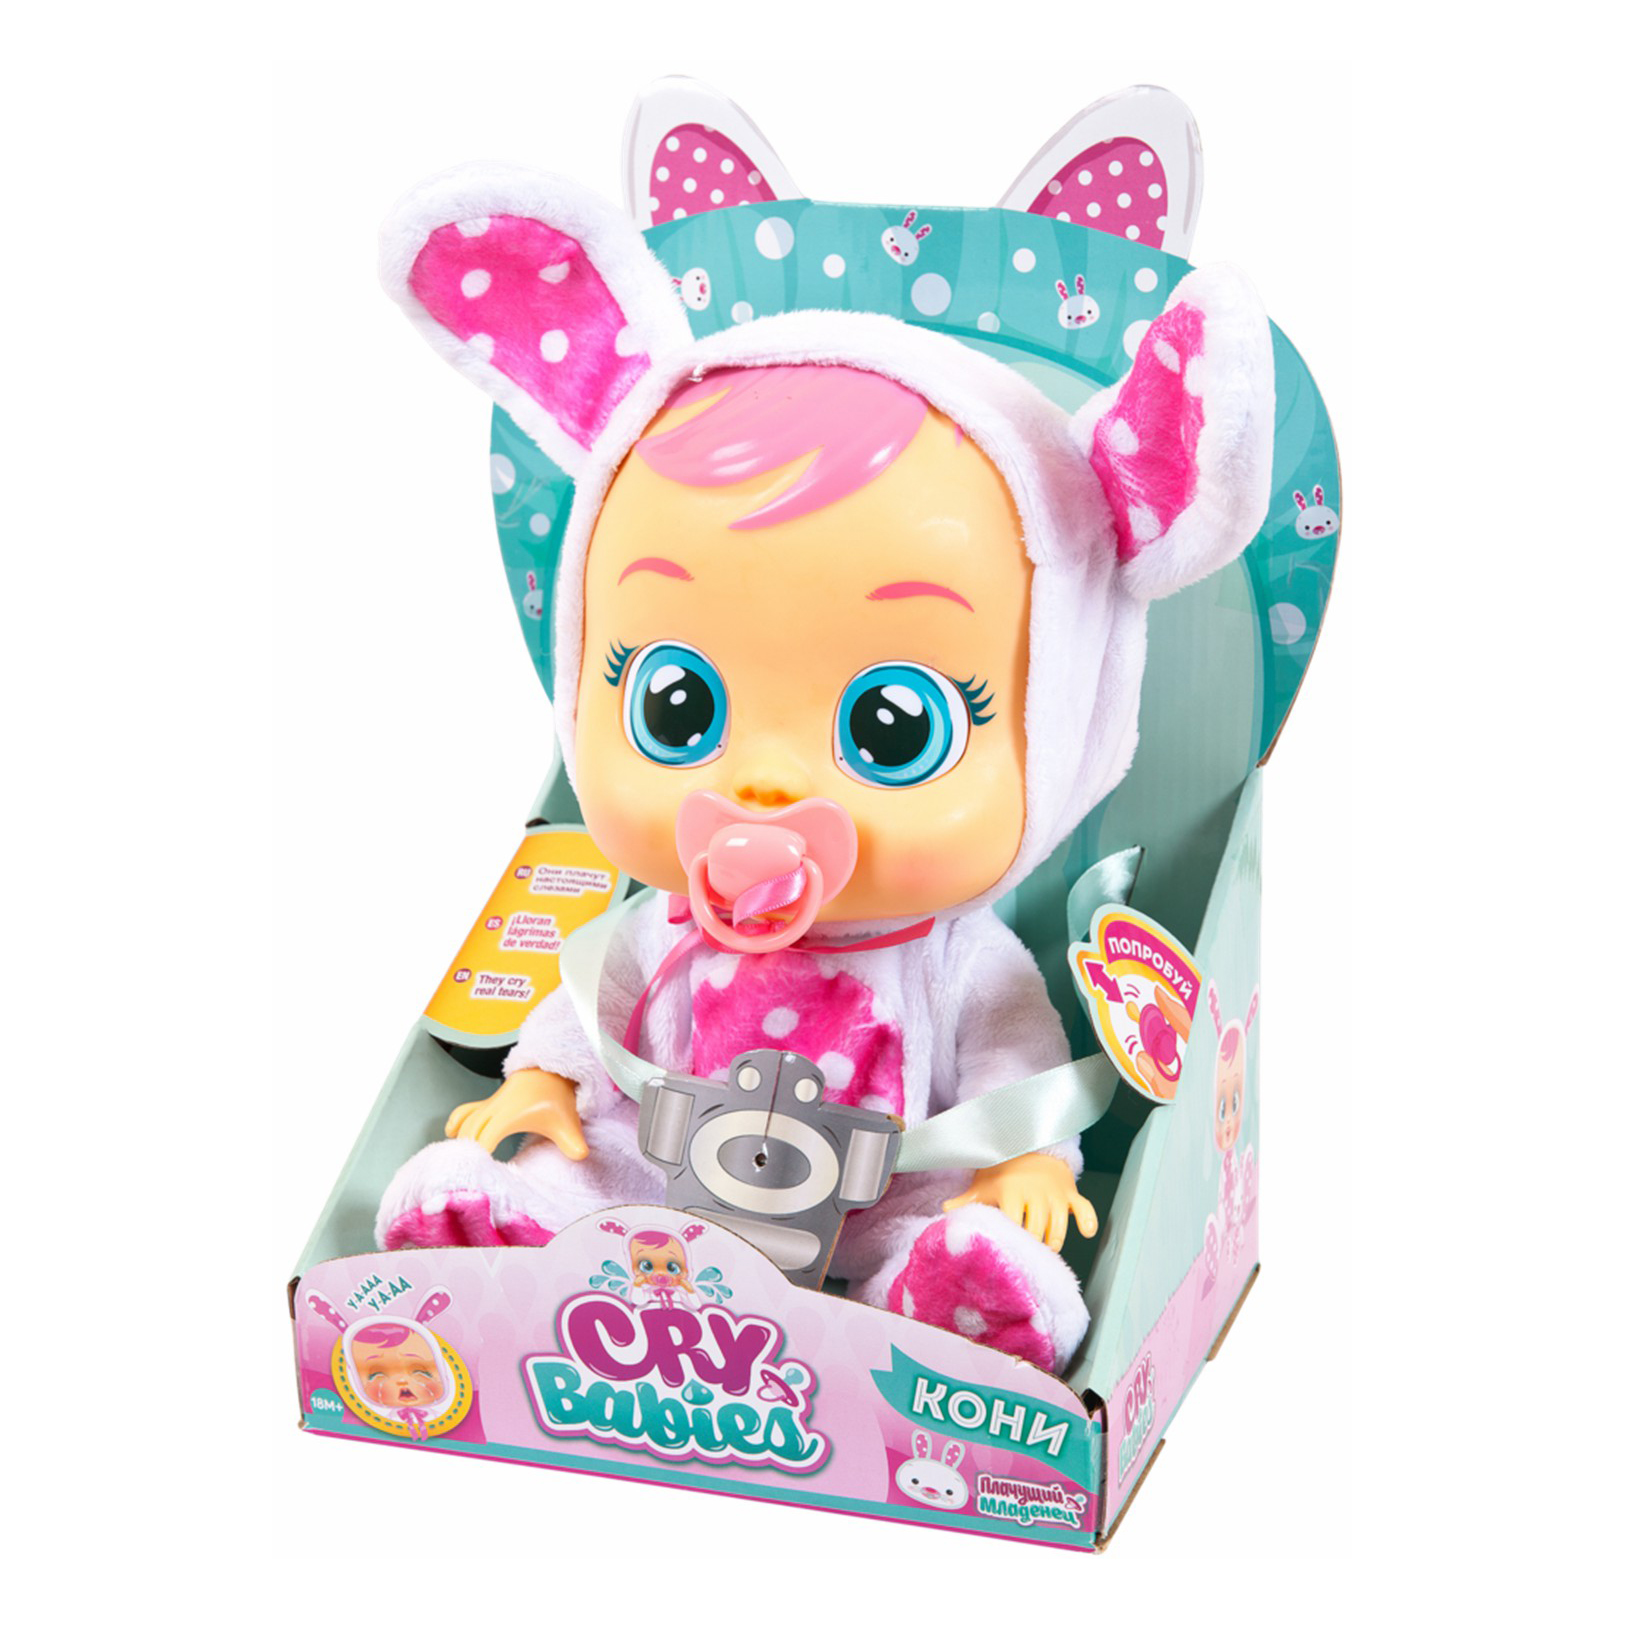 Кукла Crybabies Леди Баг IMC Toys 31 см кукла интерактивная cry babies dressy леди